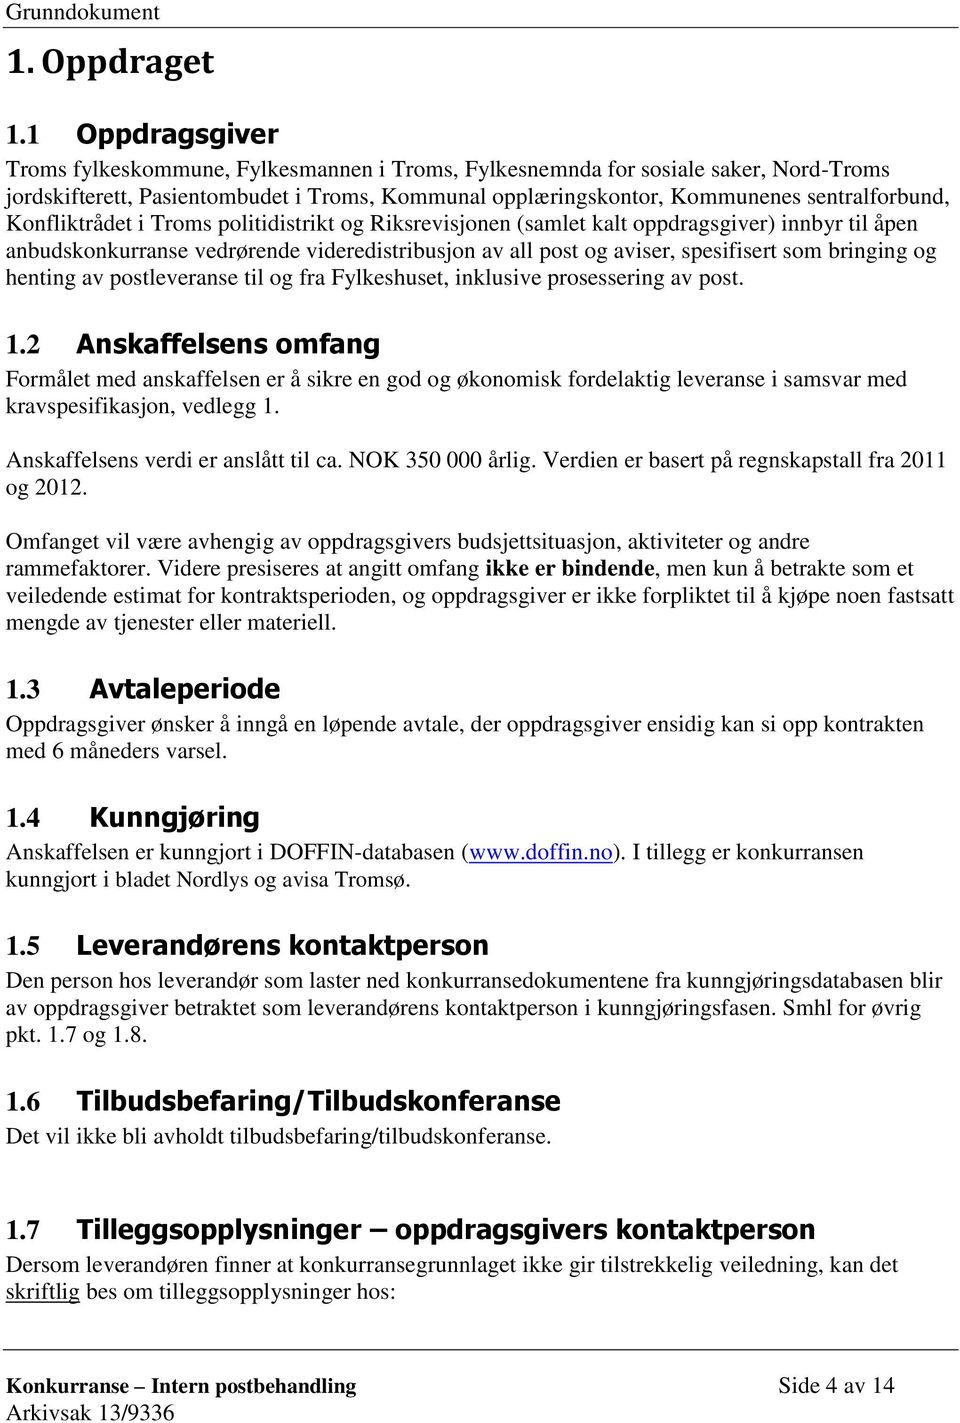 Konfliktrådet i Troms politidistrikt og Riksrevisjonen (samlet kalt oppdragsgiver) innbyr til åpen anbudskonkurranse vedrørende videredistribusjon av all post og aviser, spesifisert som bringing og